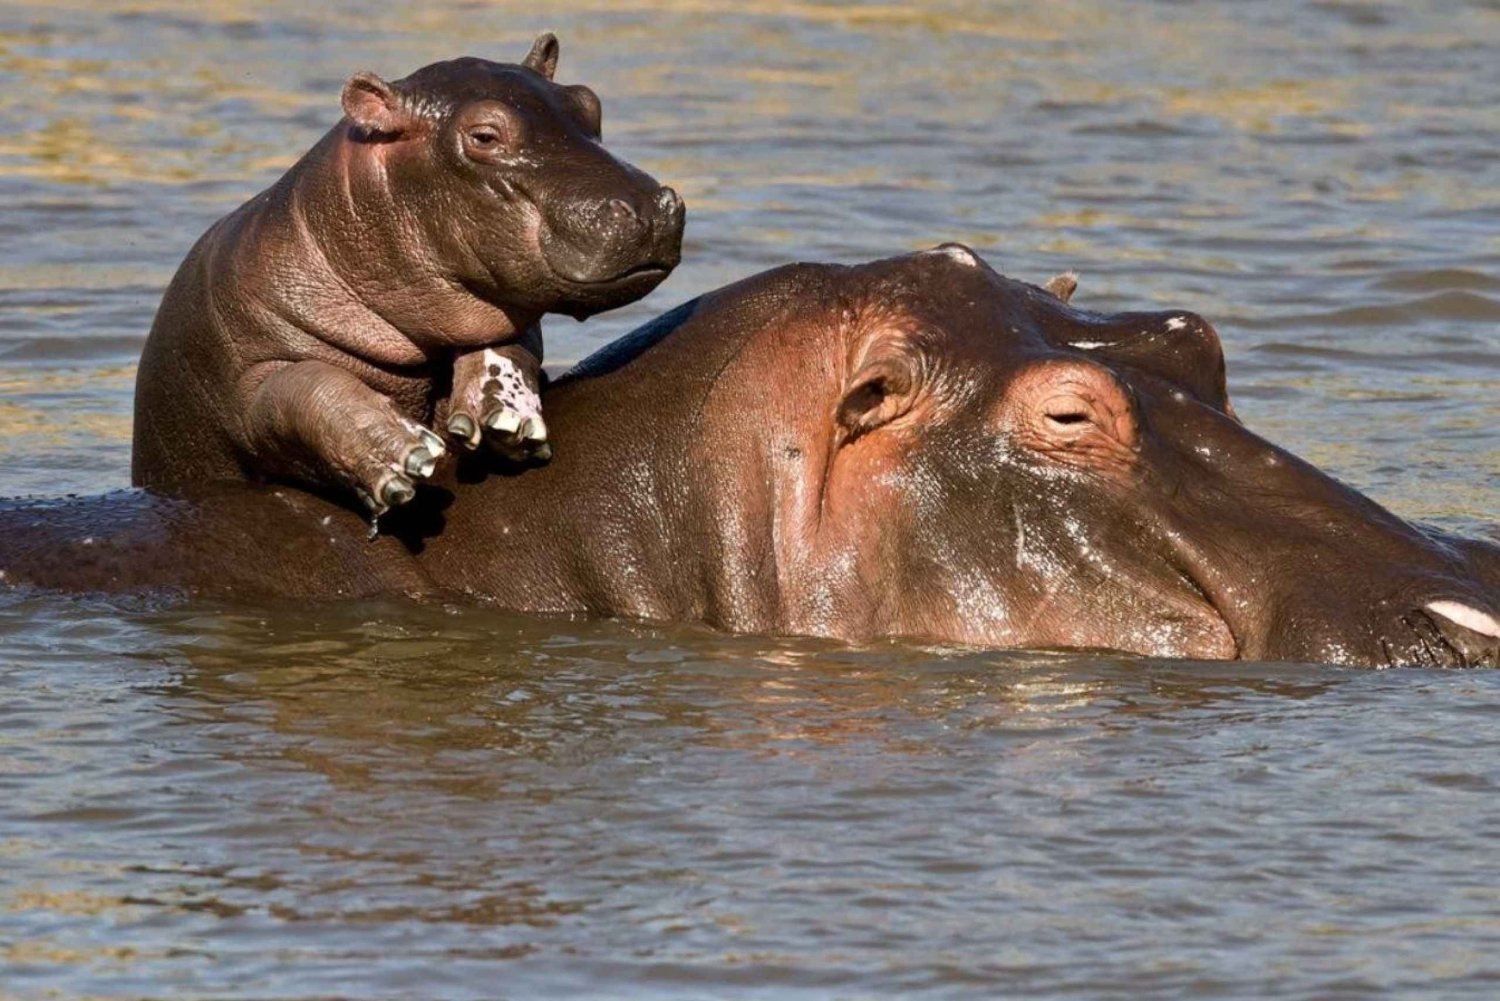 Excursión de un día a Isimangaliso y crucero en barco con hipopótamos y cocodrilos desde Durban